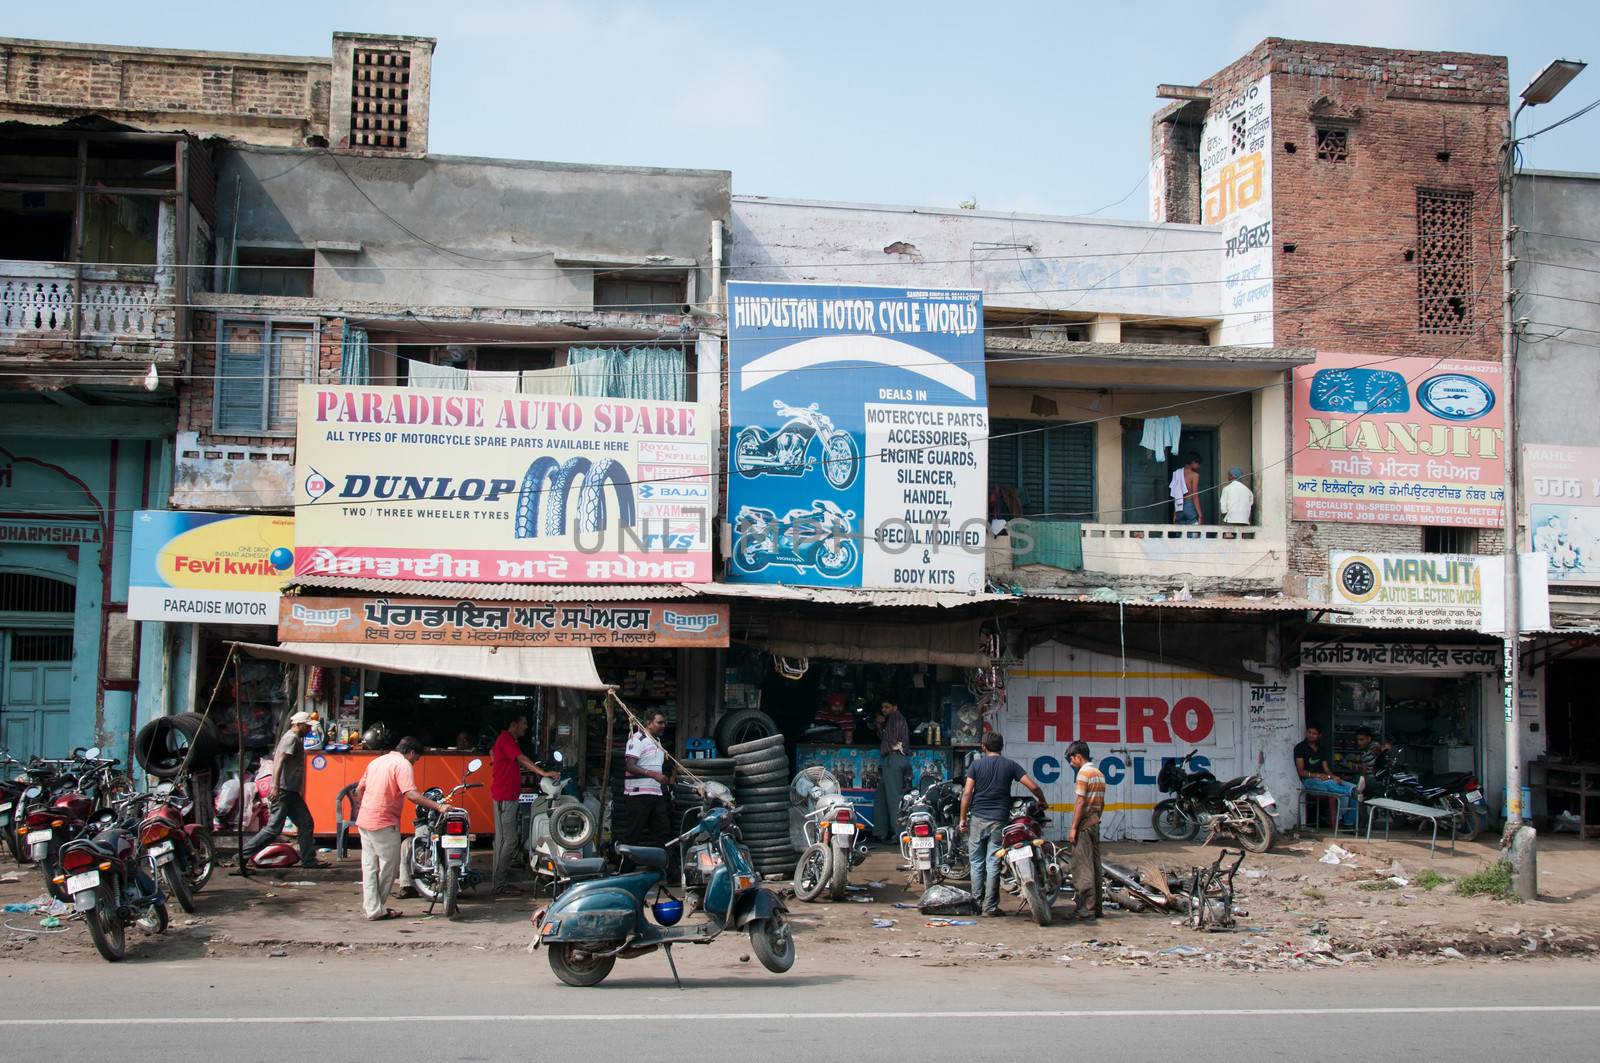 Chaotic motorbike repair service work, India by iryna_rasko